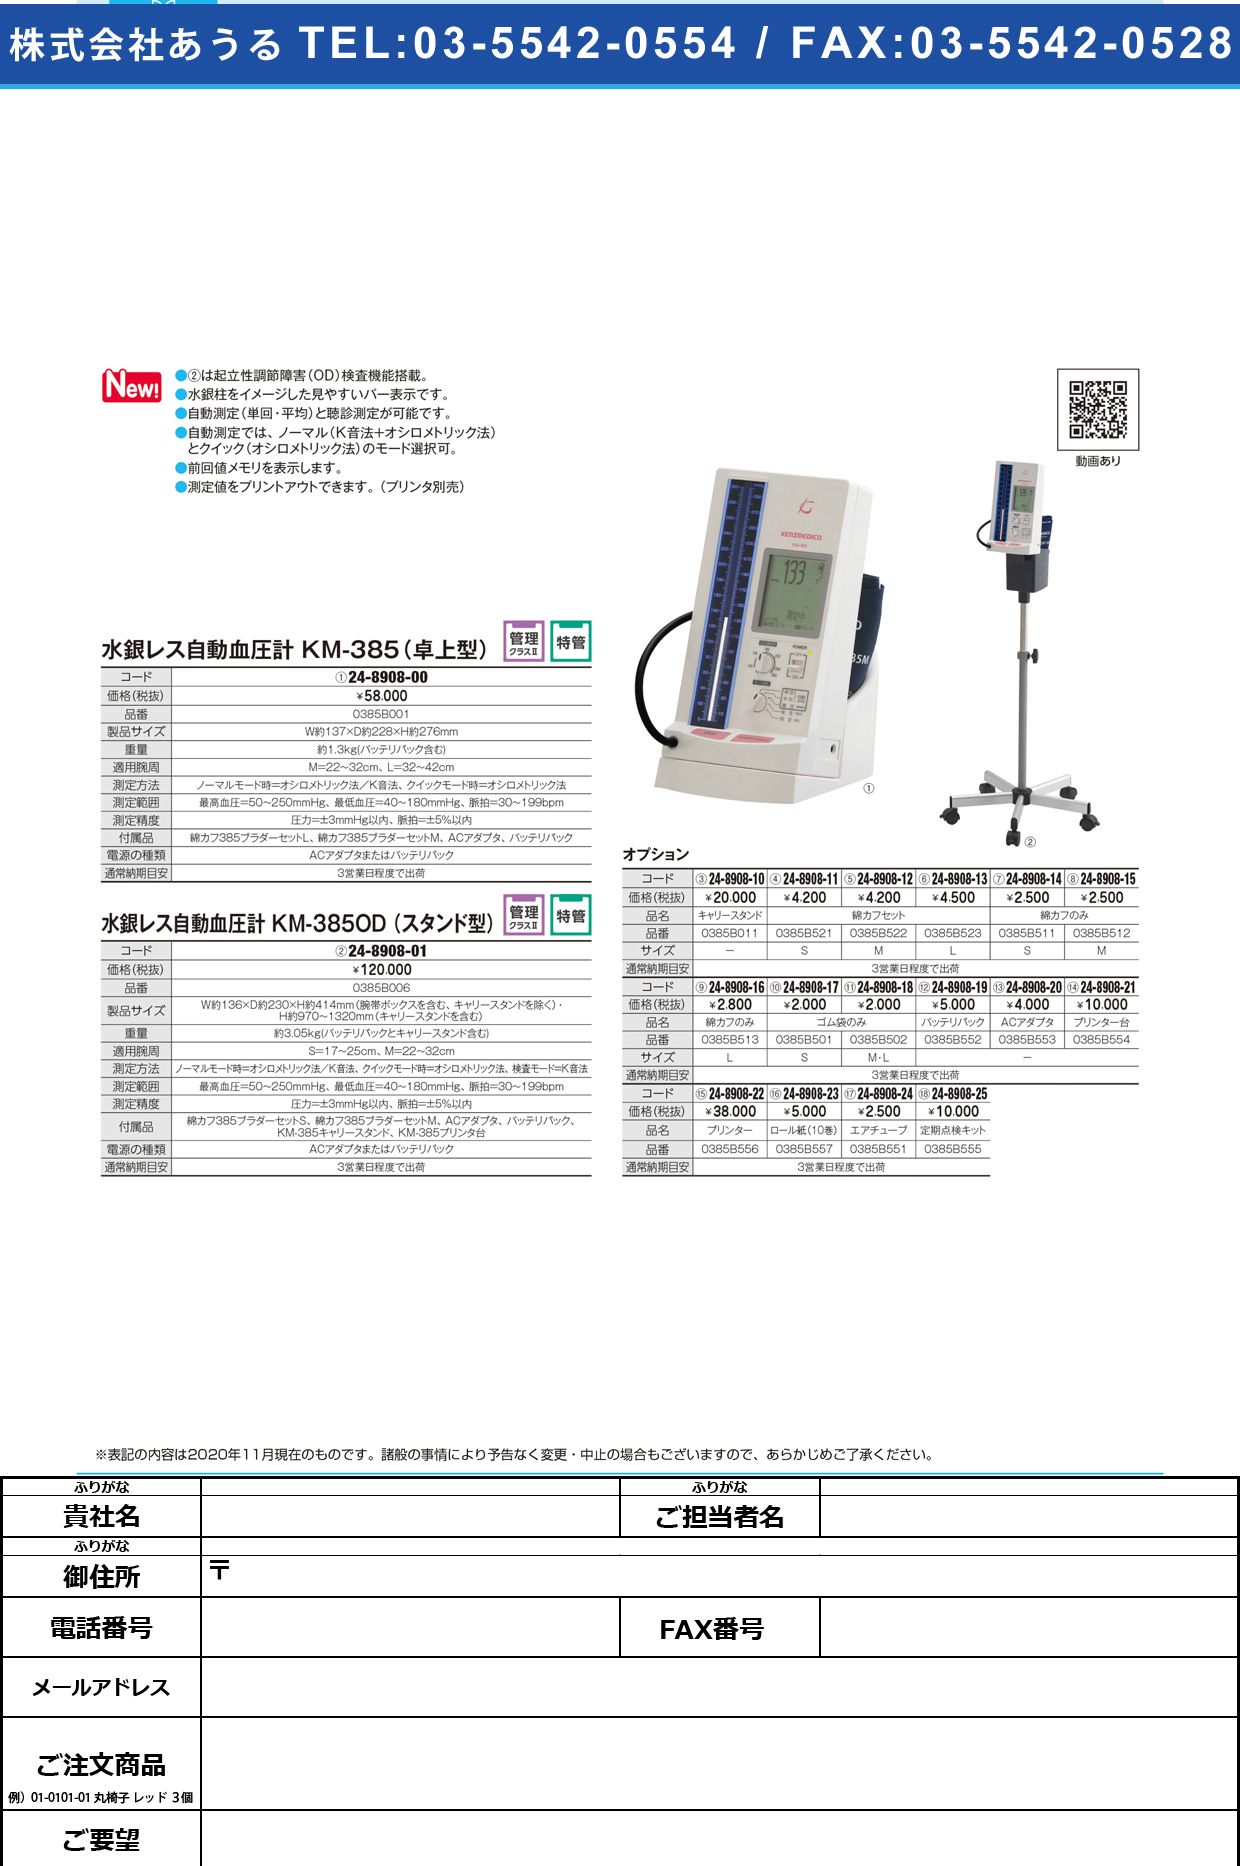 水銀レス自動血圧計(卓上型) KM-385(0385B001)KM-385(0385B001)(24-8908-00)【ケンツメディコ】(販売単位:1)